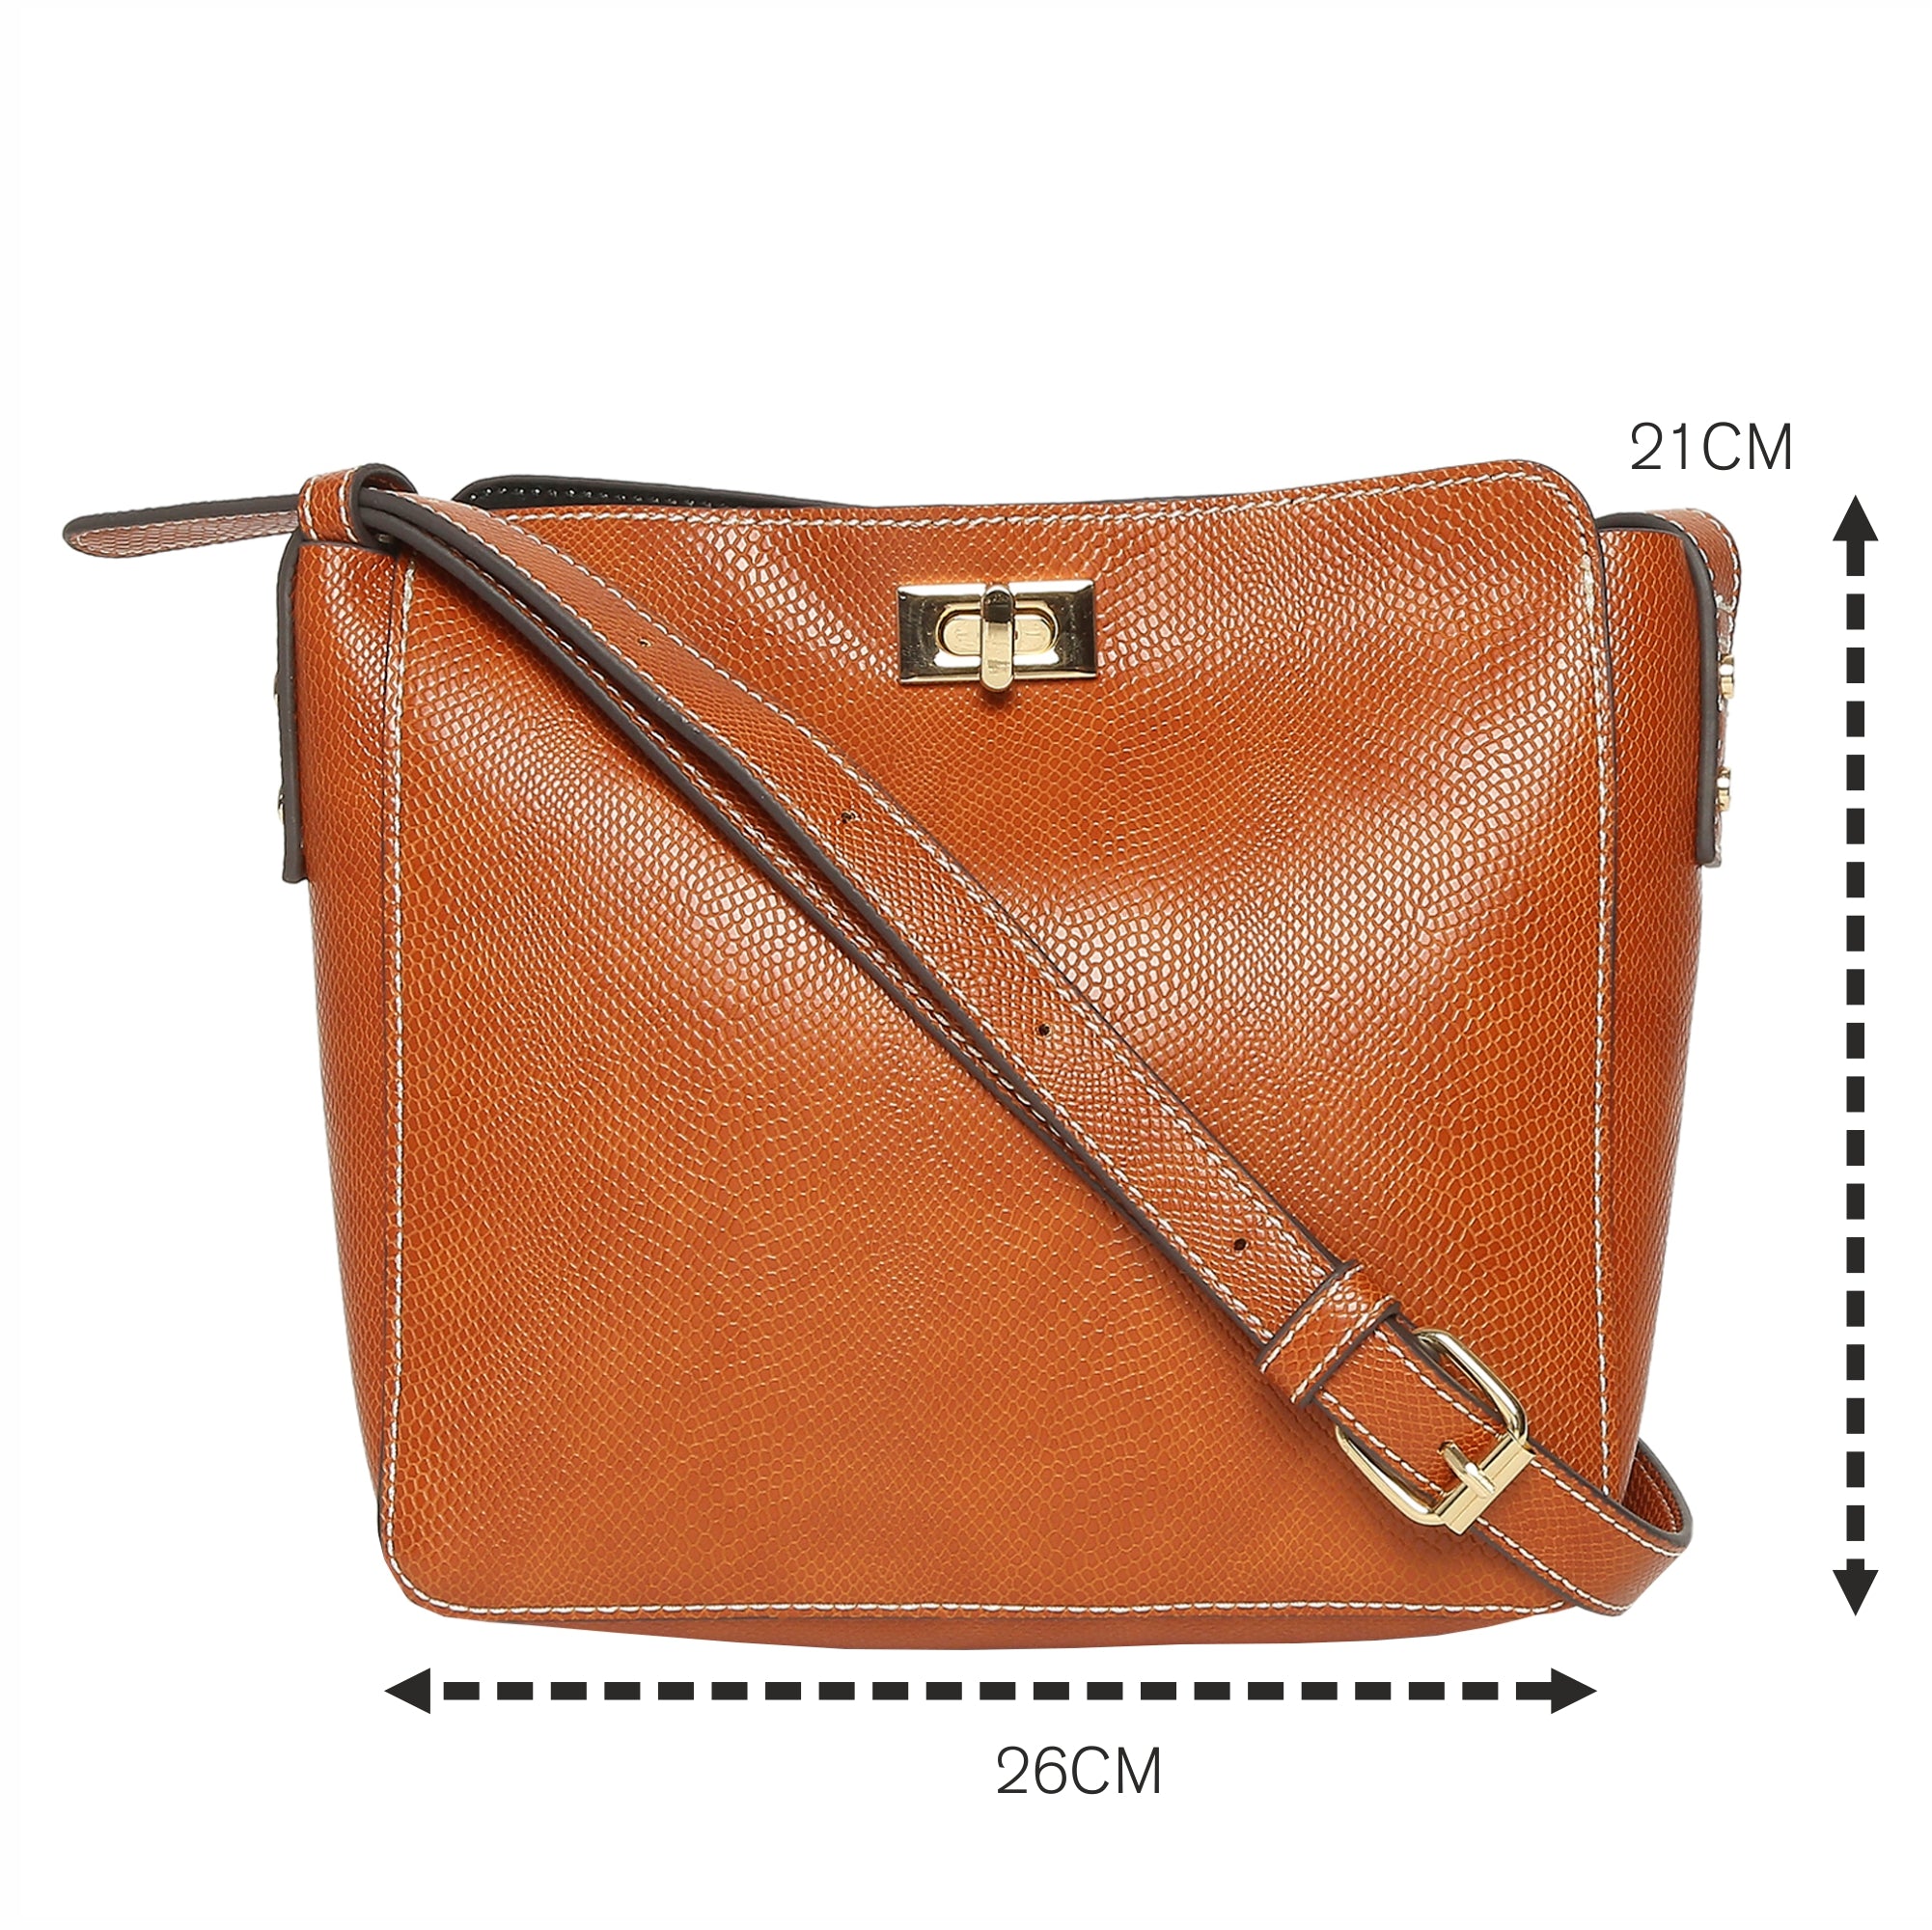 Accessorize London Women's Faux Leather Orange Twist Lock Sling Bag